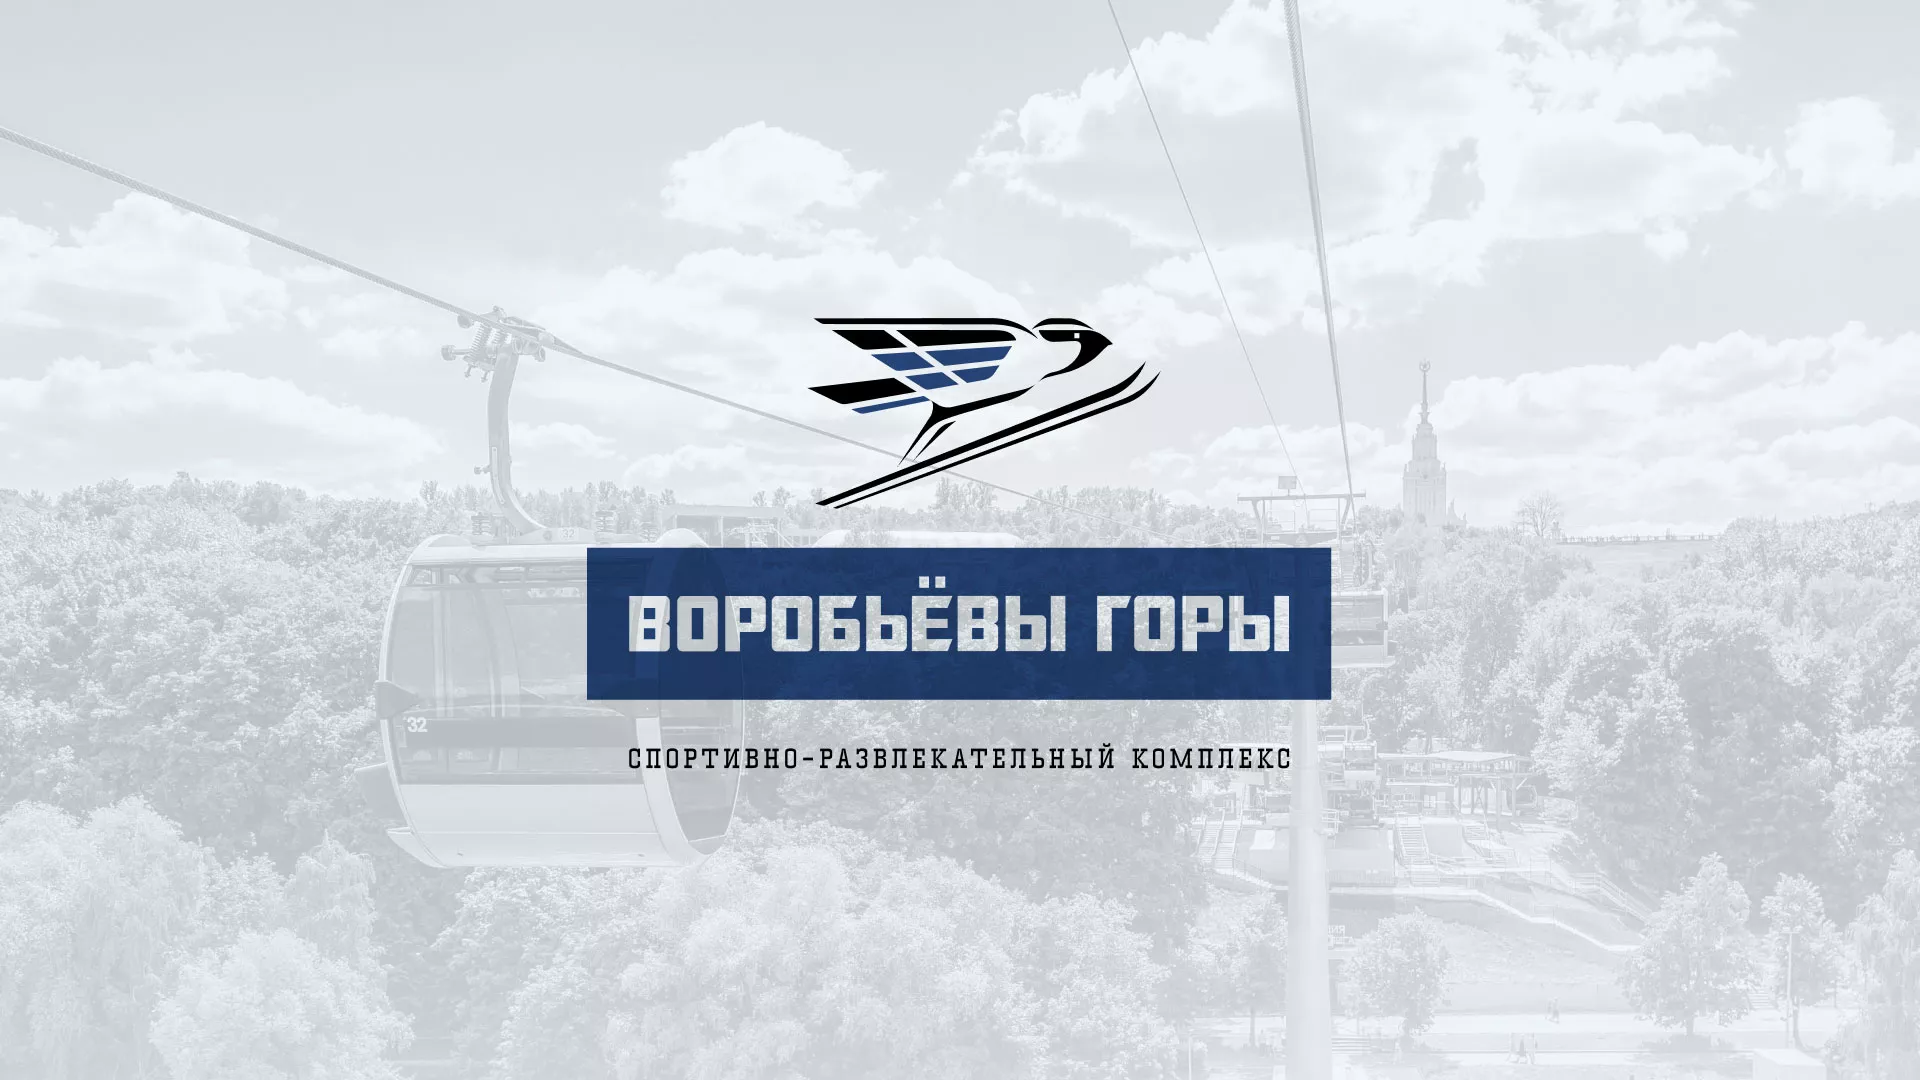 Разработка сайта в Гороховце для спортивно-развлекательного комплекса «Воробьёвы горы»